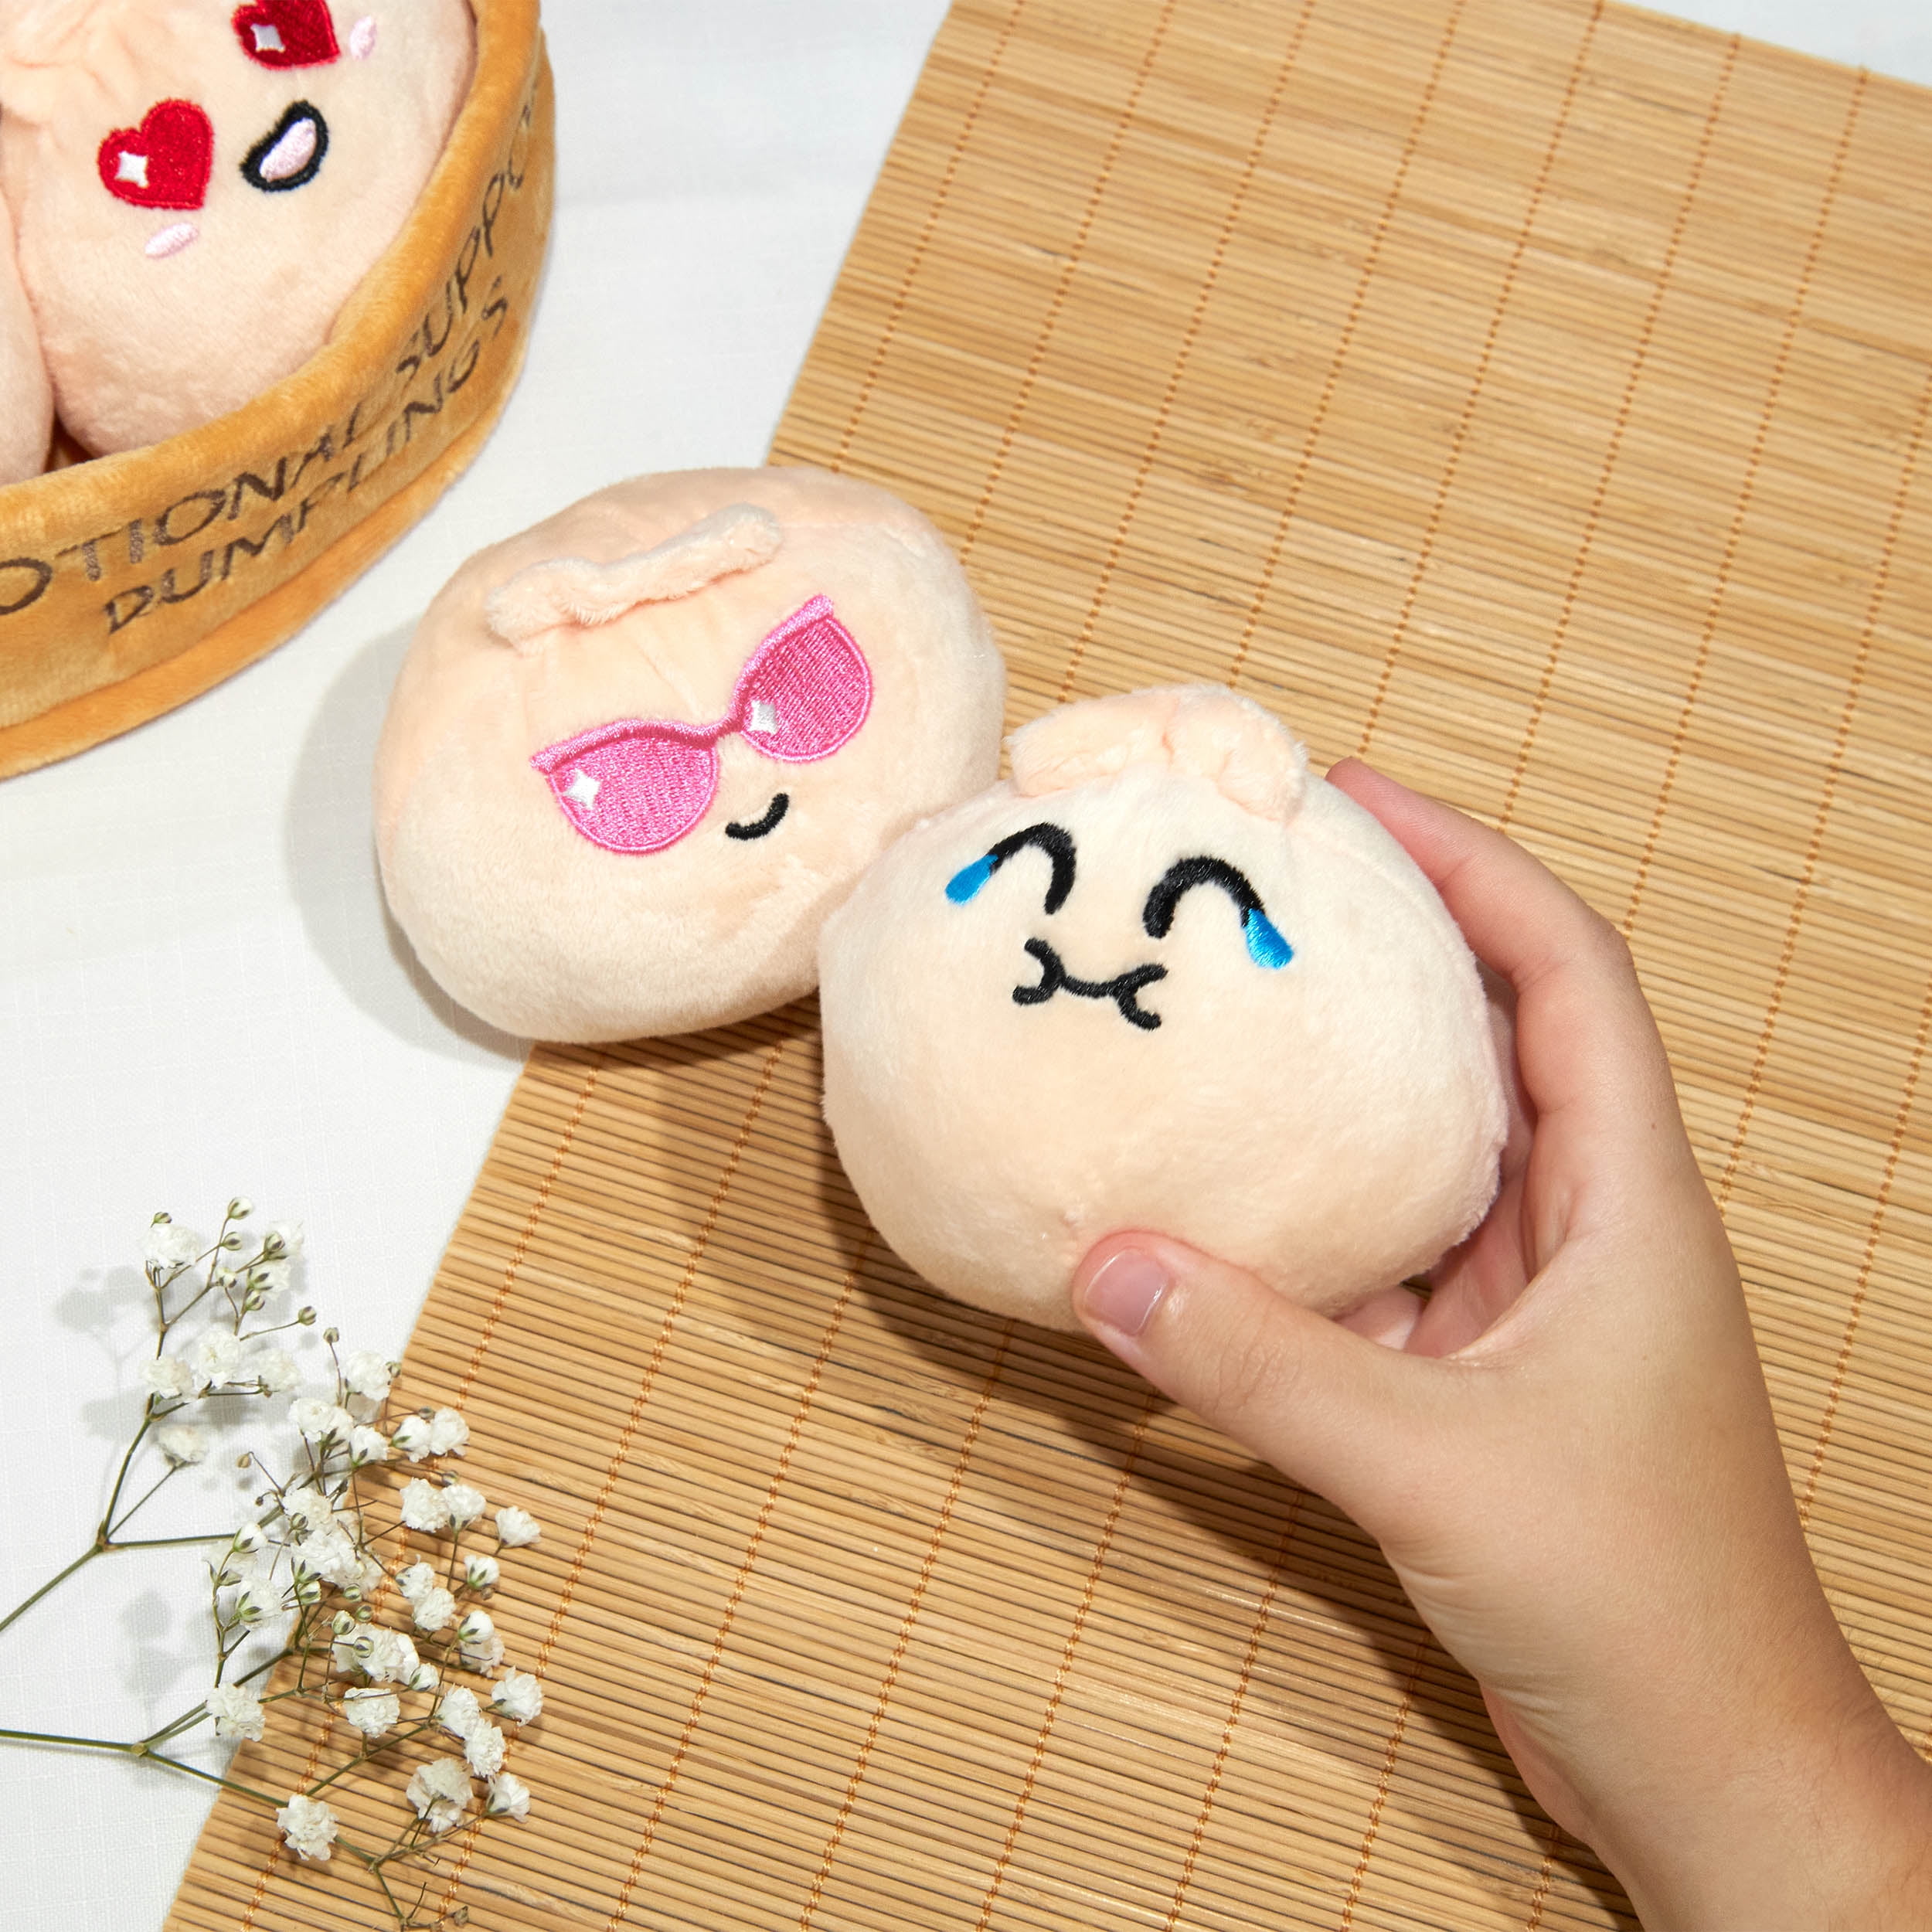 emotional support dumplings｜TikTok Search